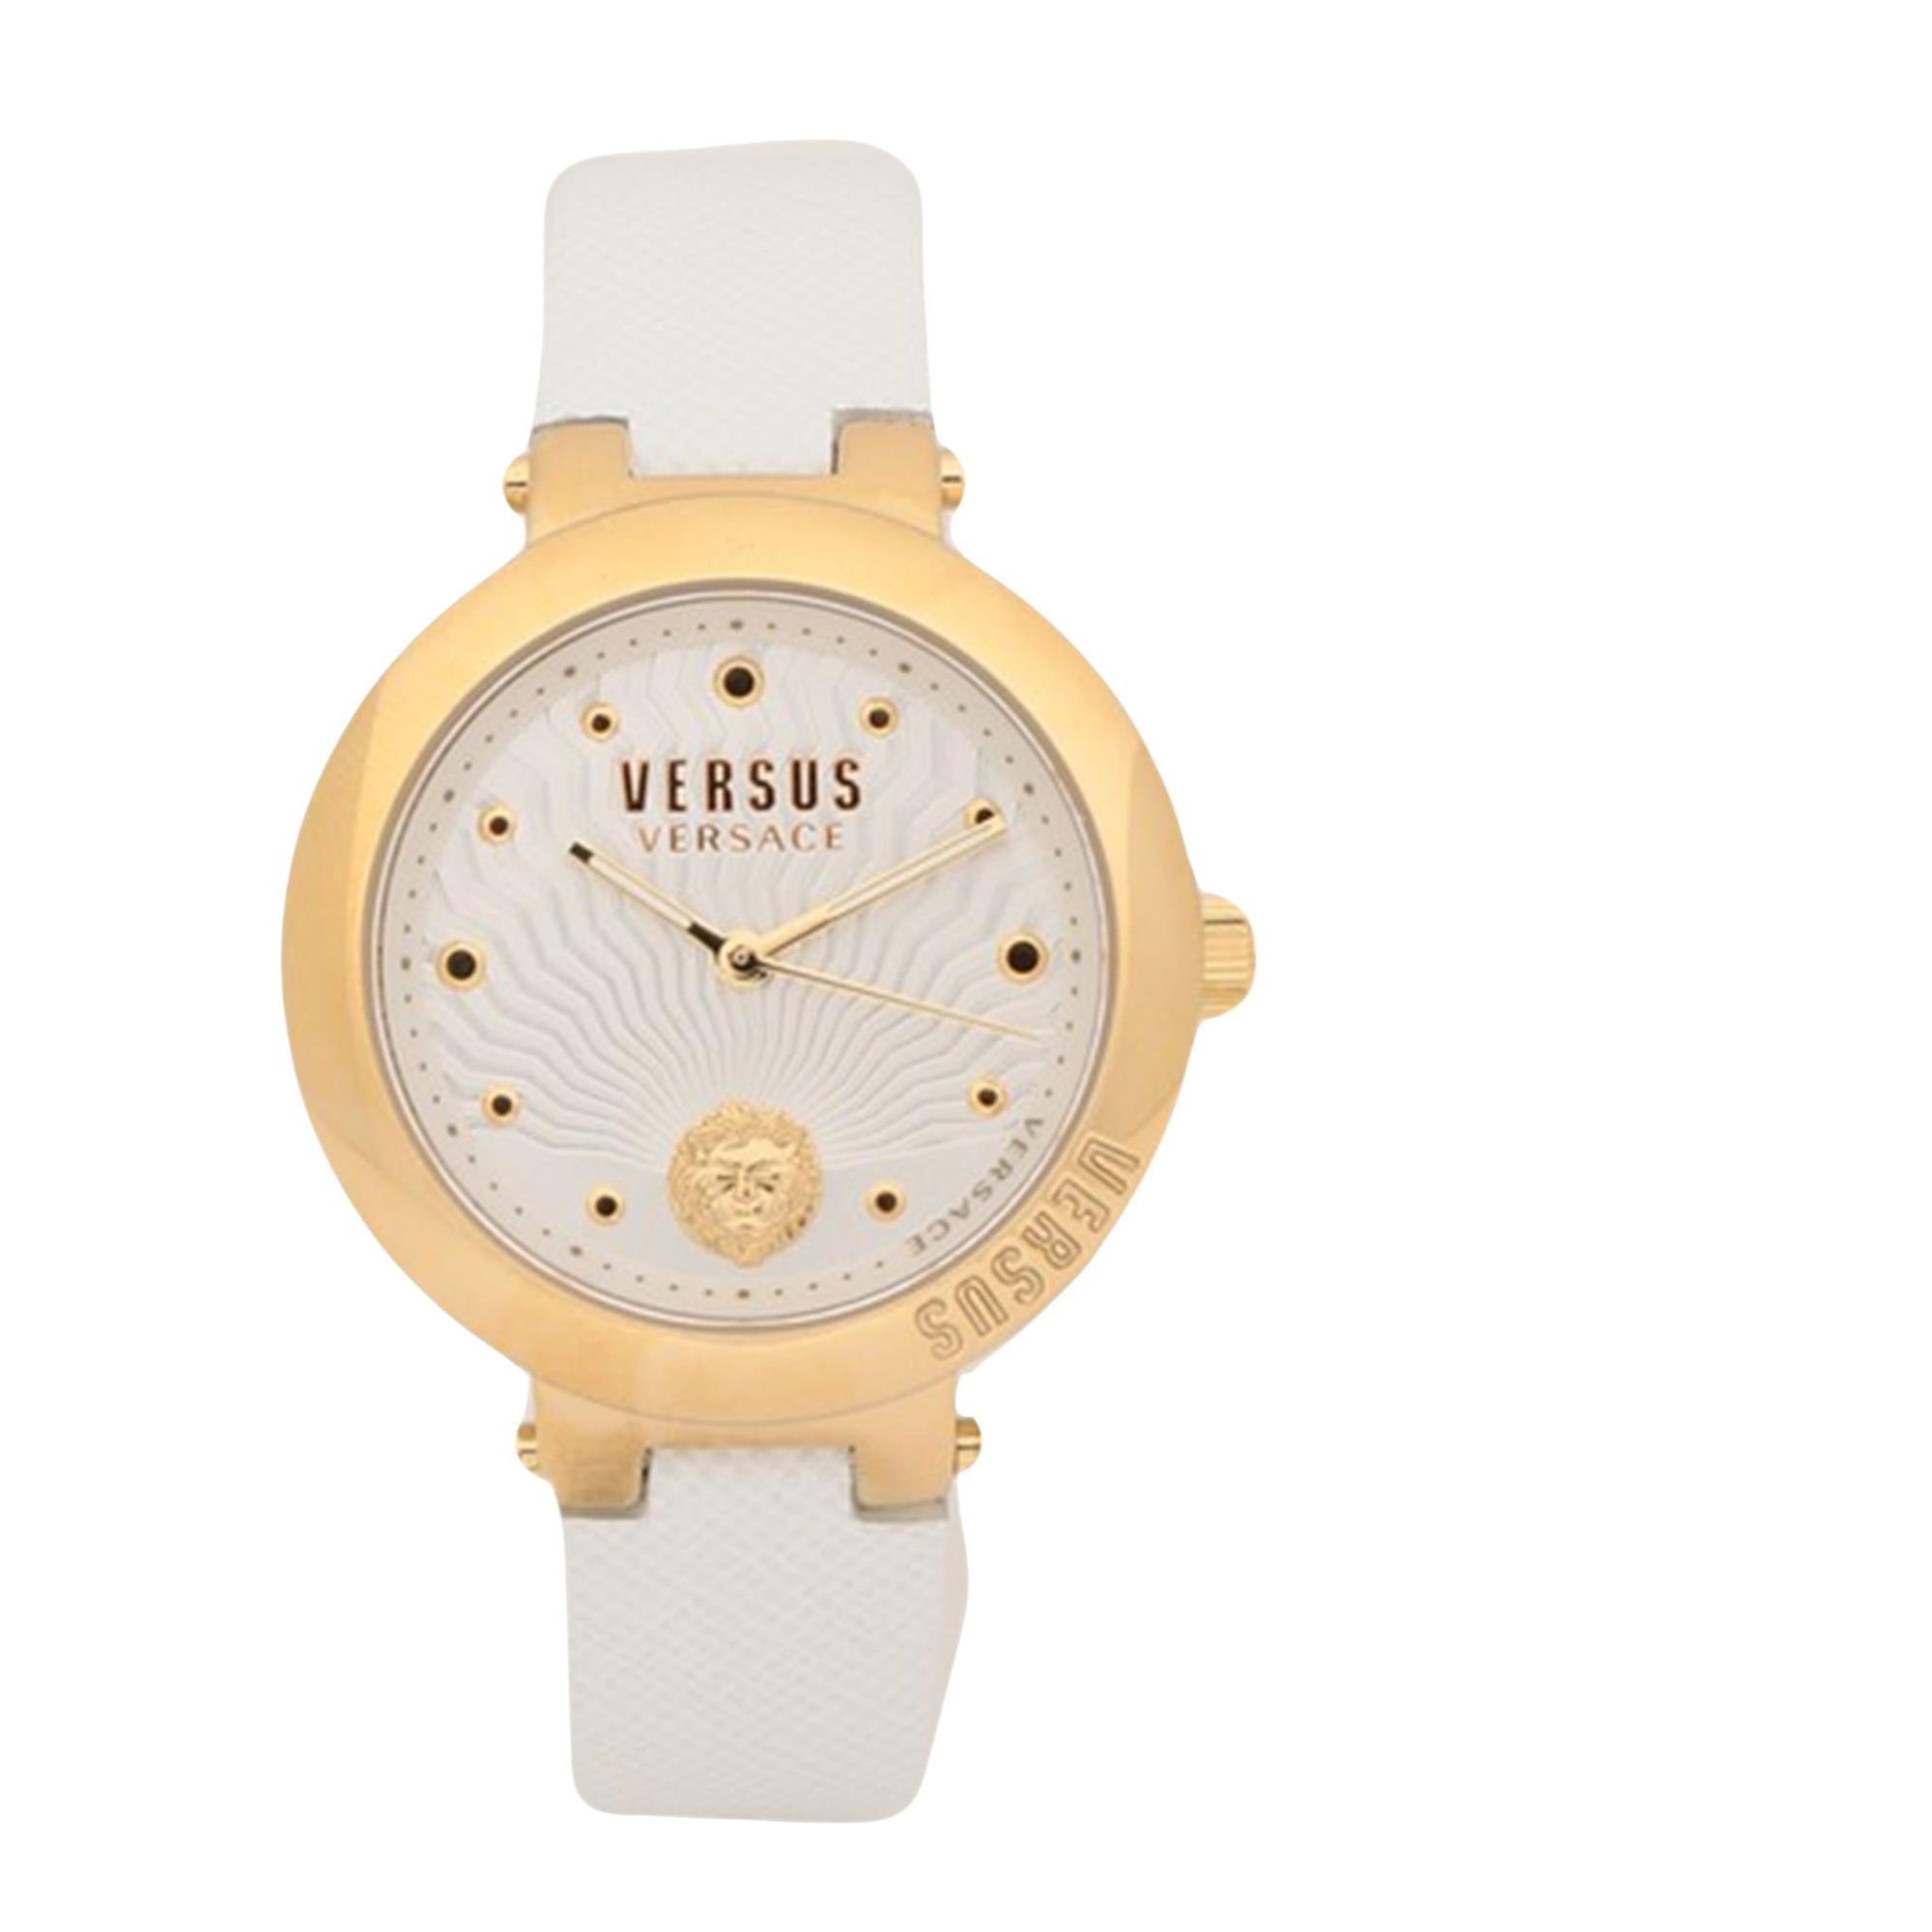 VERSUS 베르사체 여성 시계 Wrist watches SKU-270081336이끌라베르사체